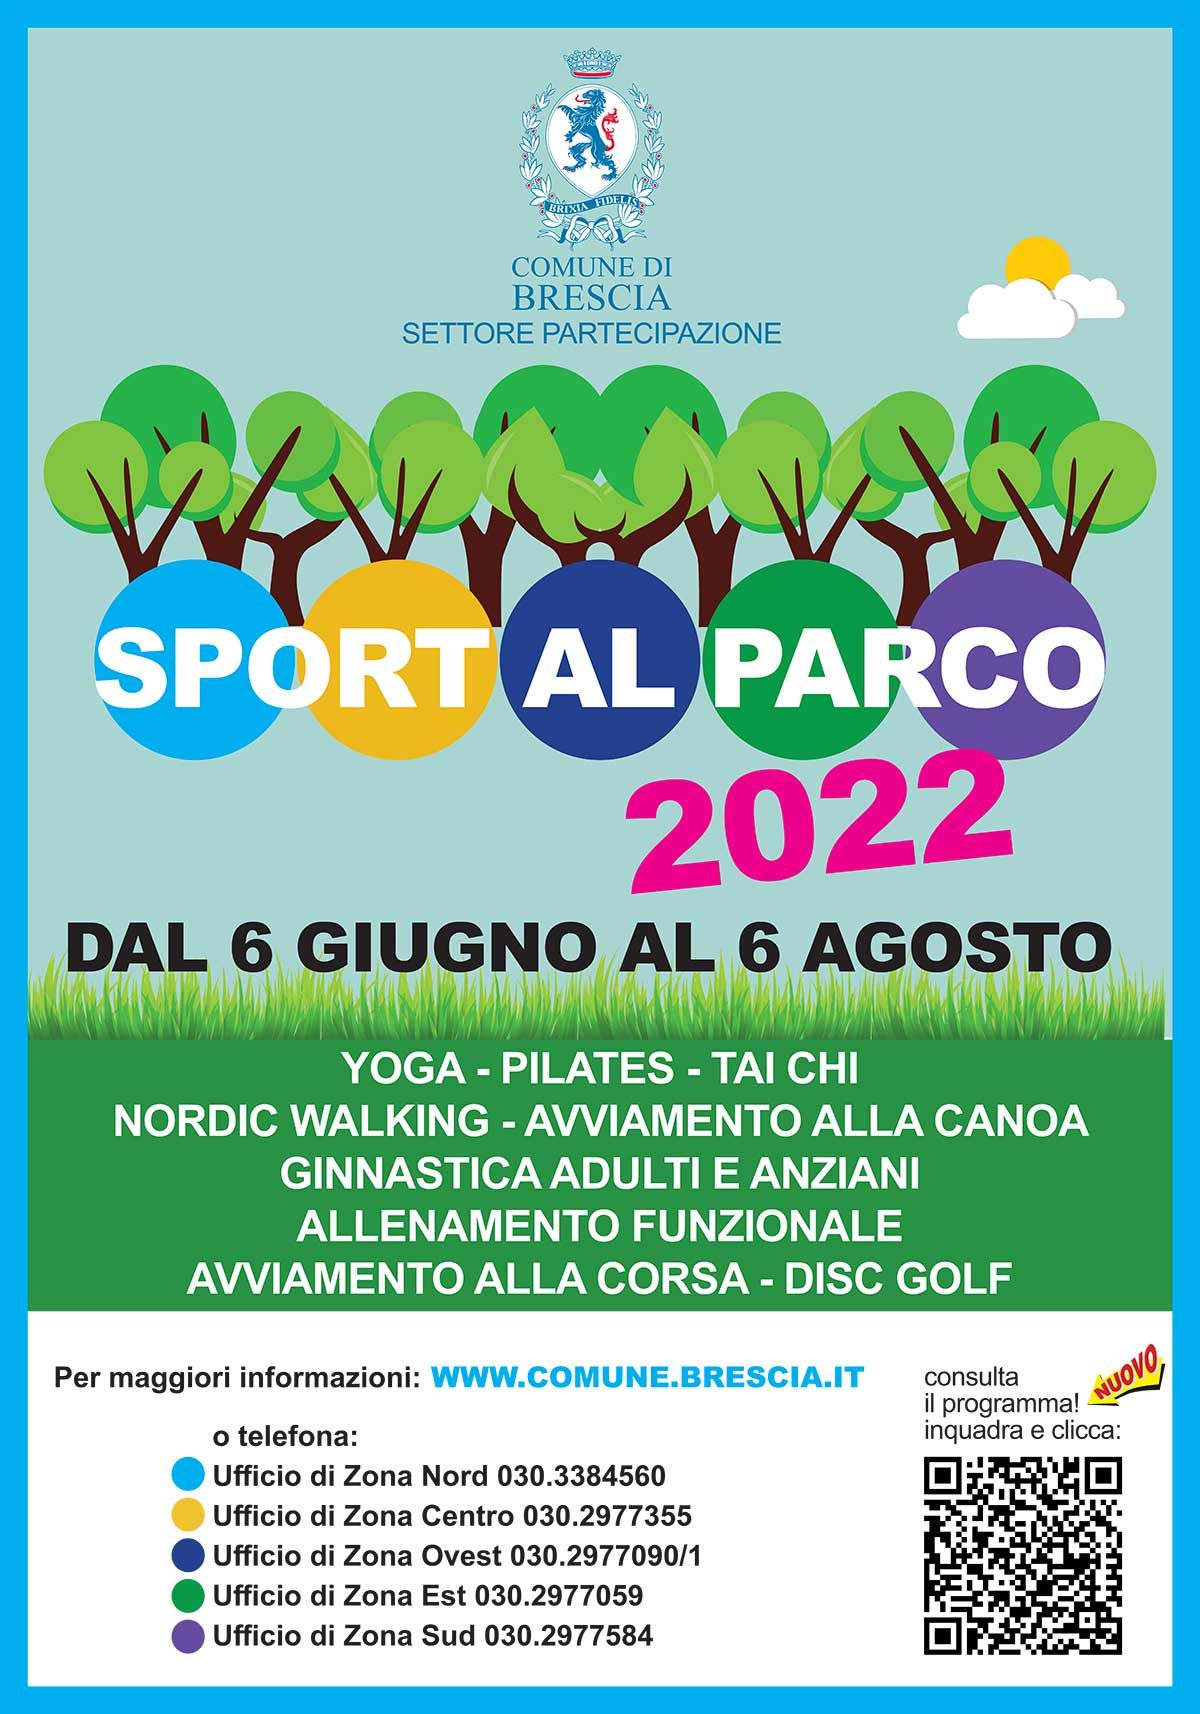 Sport-al-parco-2022--comune-di-brescia